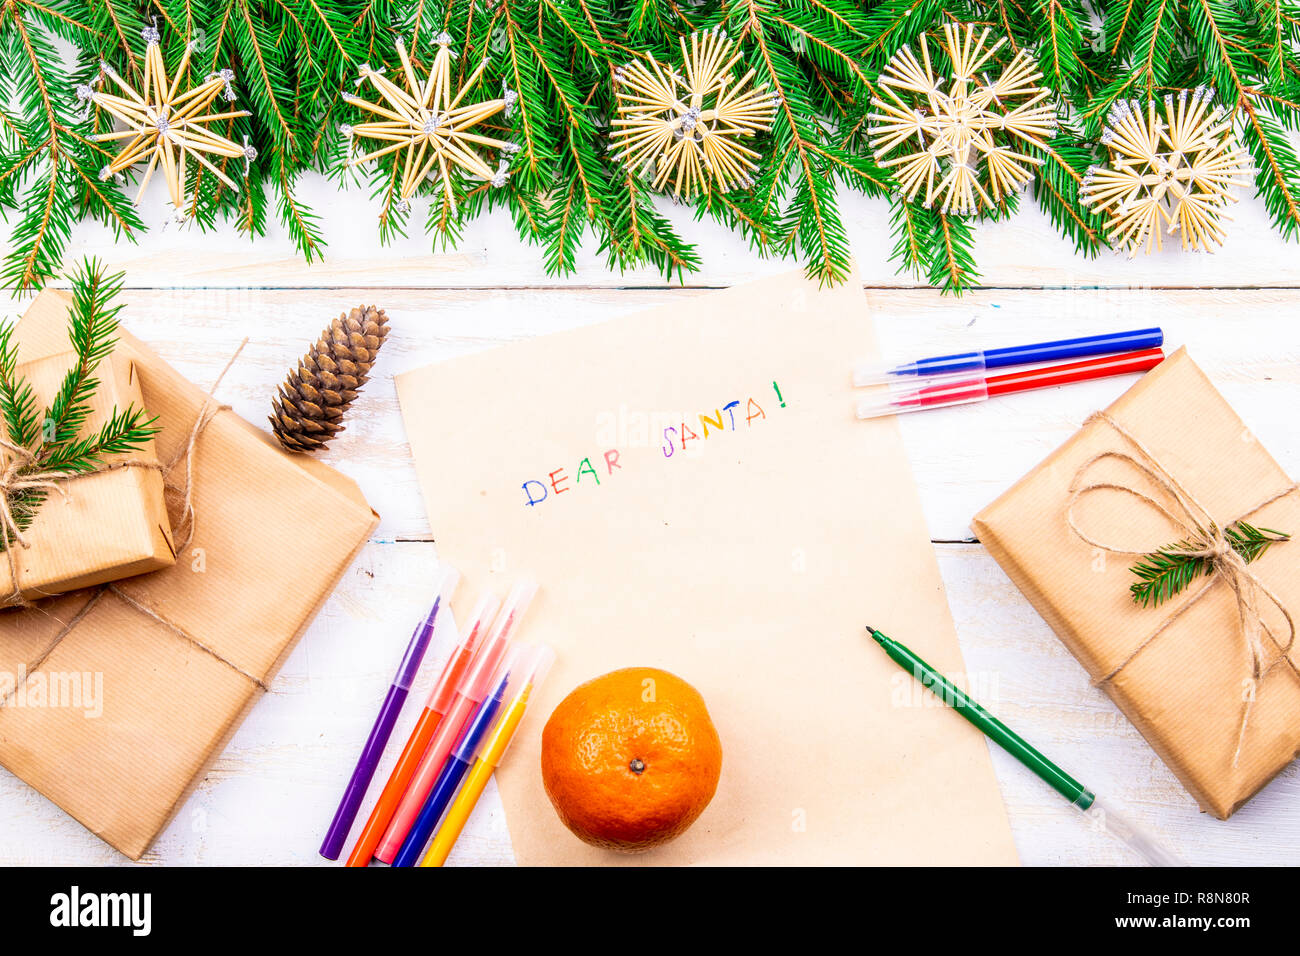 Auf dem hölzernen Tisch sind ein altes gelbes Papier, das sagt, Lieber Weihnachtsmann rot, Bleistifte, Kugelschreiber versch. Farben Geschenk und Zweige für das neue Jahr Stockfoto